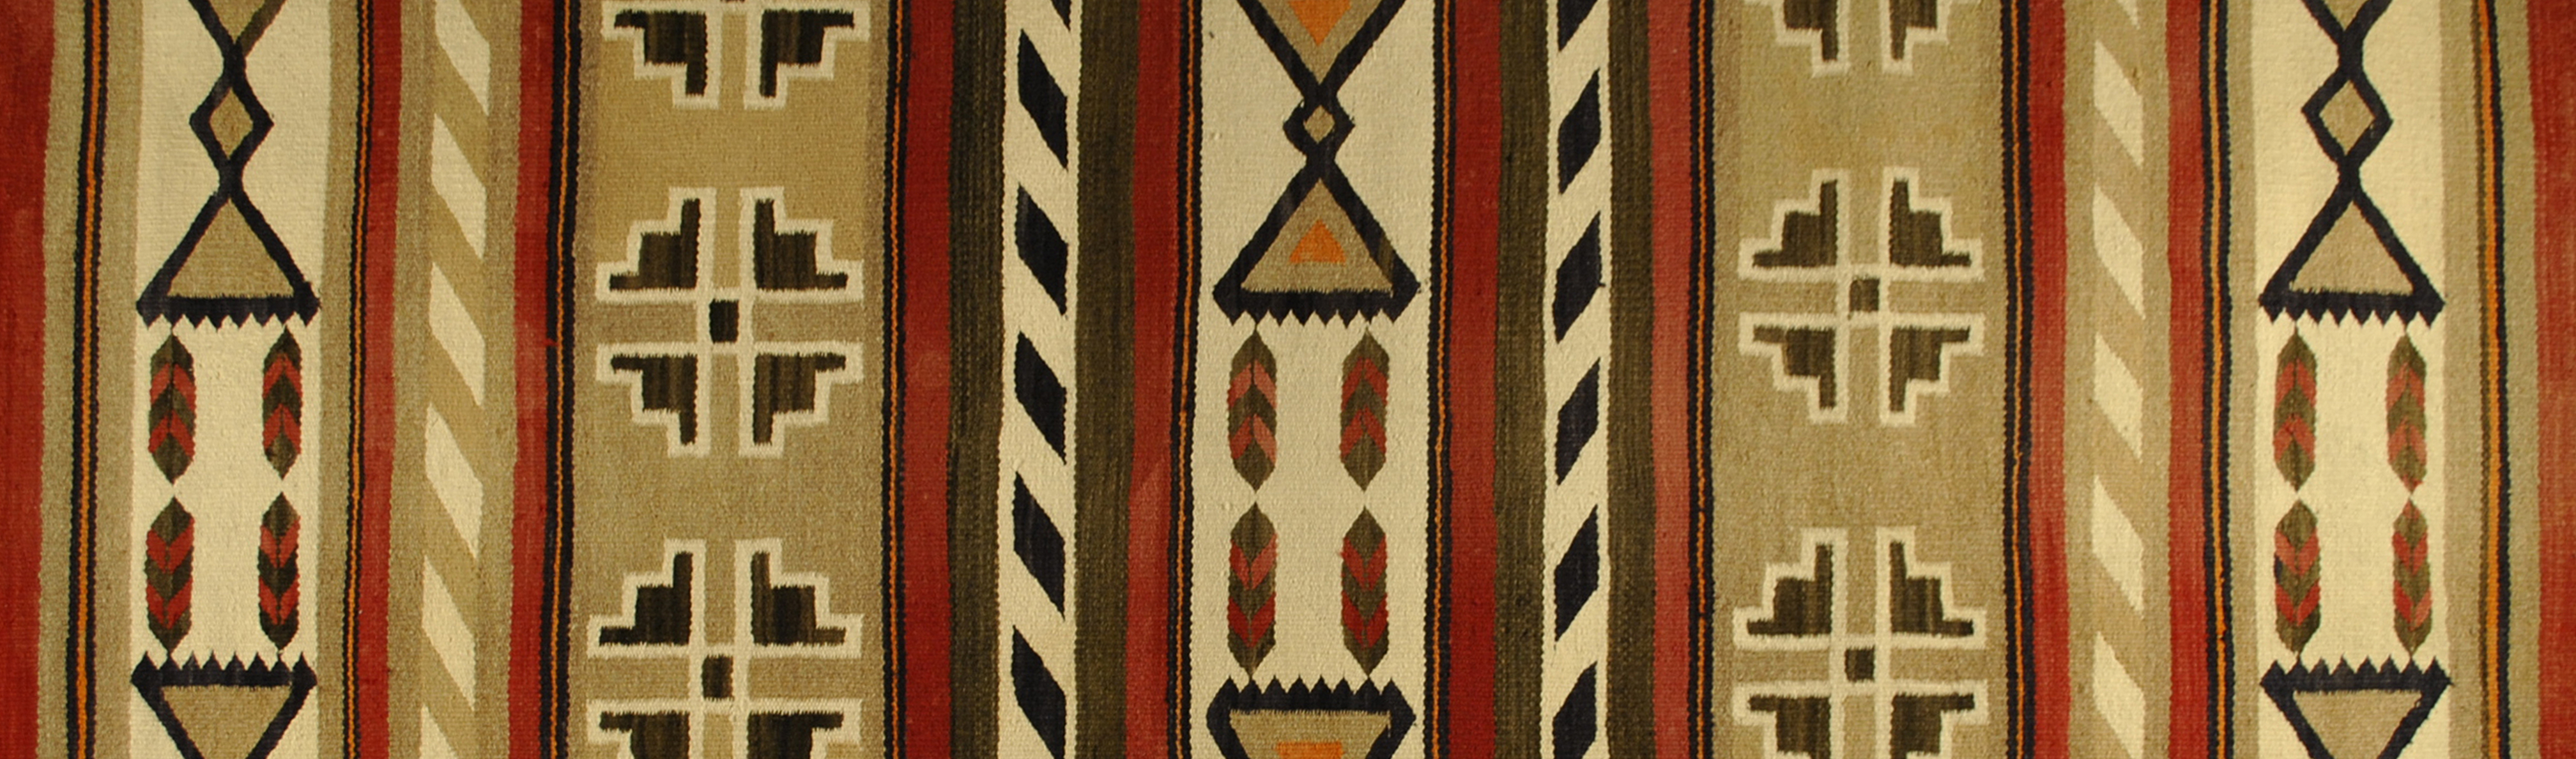 A woven Navajo textile